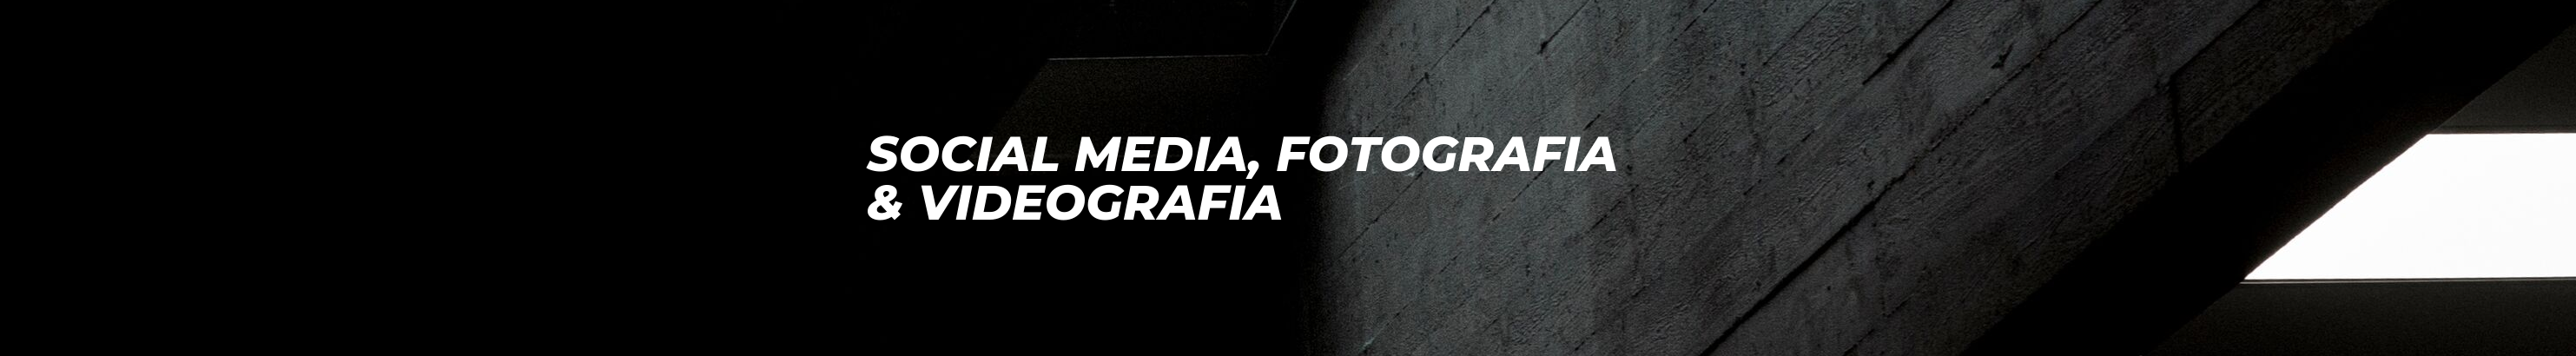 Diego F. Araujo's profile banner